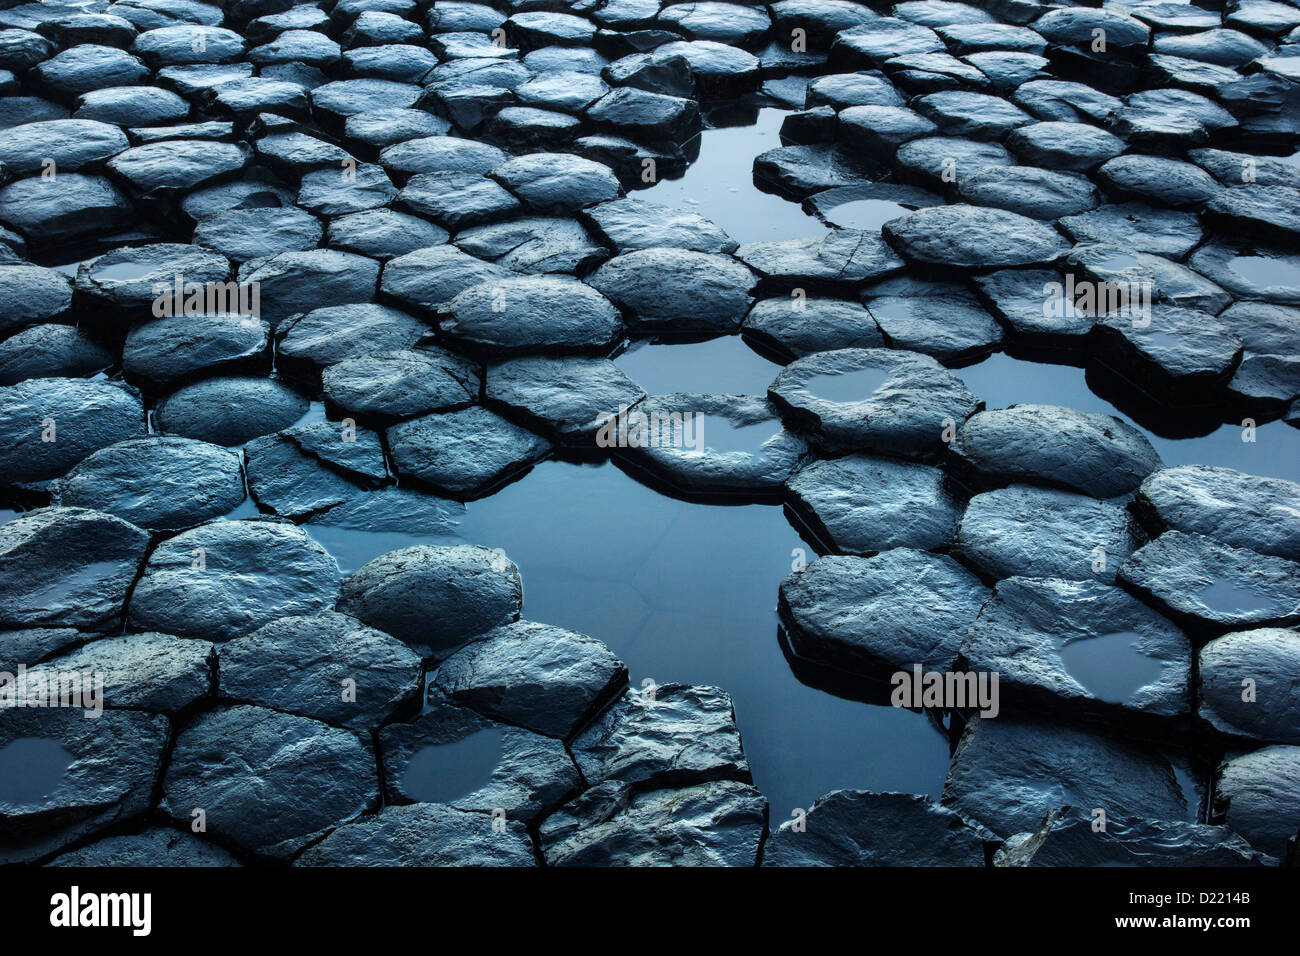 Détails de la structure hexagonale des roches basaltiques de la célèbre des Géants, site classé au patrimoine mondial de l'Irlande du Nord. Banque D'Images